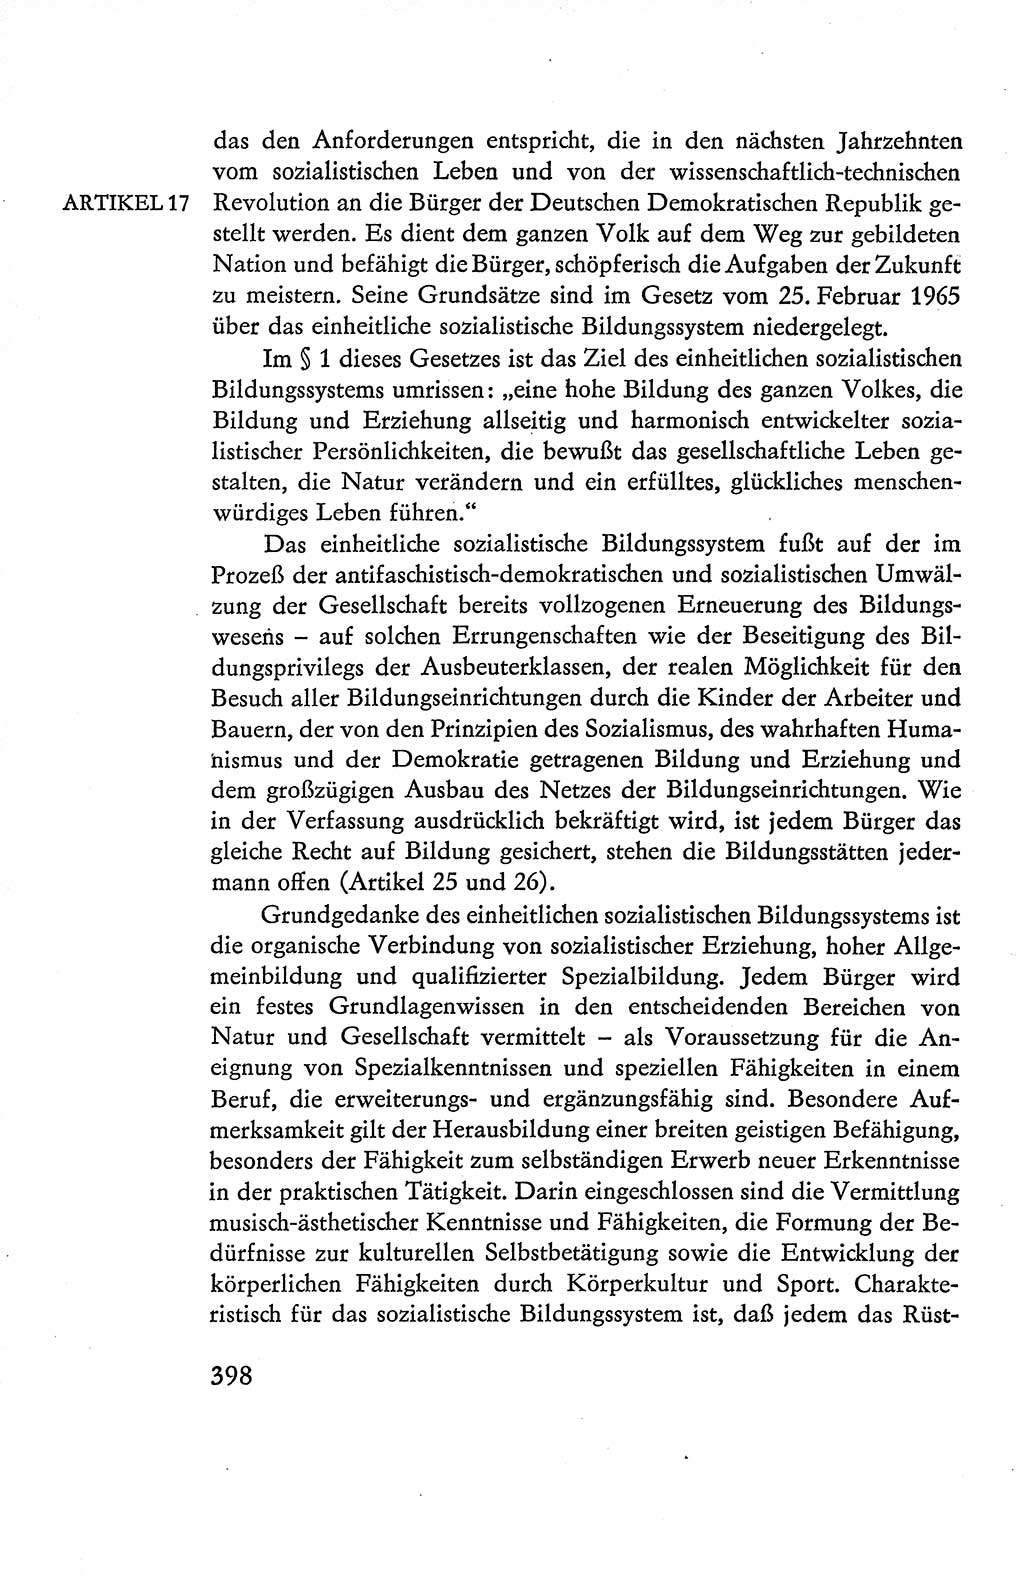 Verfassung der Deutschen Demokratischen Republik (DDR), Dokumente, Kommentar 1969, Band 1, Seite 398 (Verf. DDR Dok. Komm. 1969, Bd. 1, S. 398)